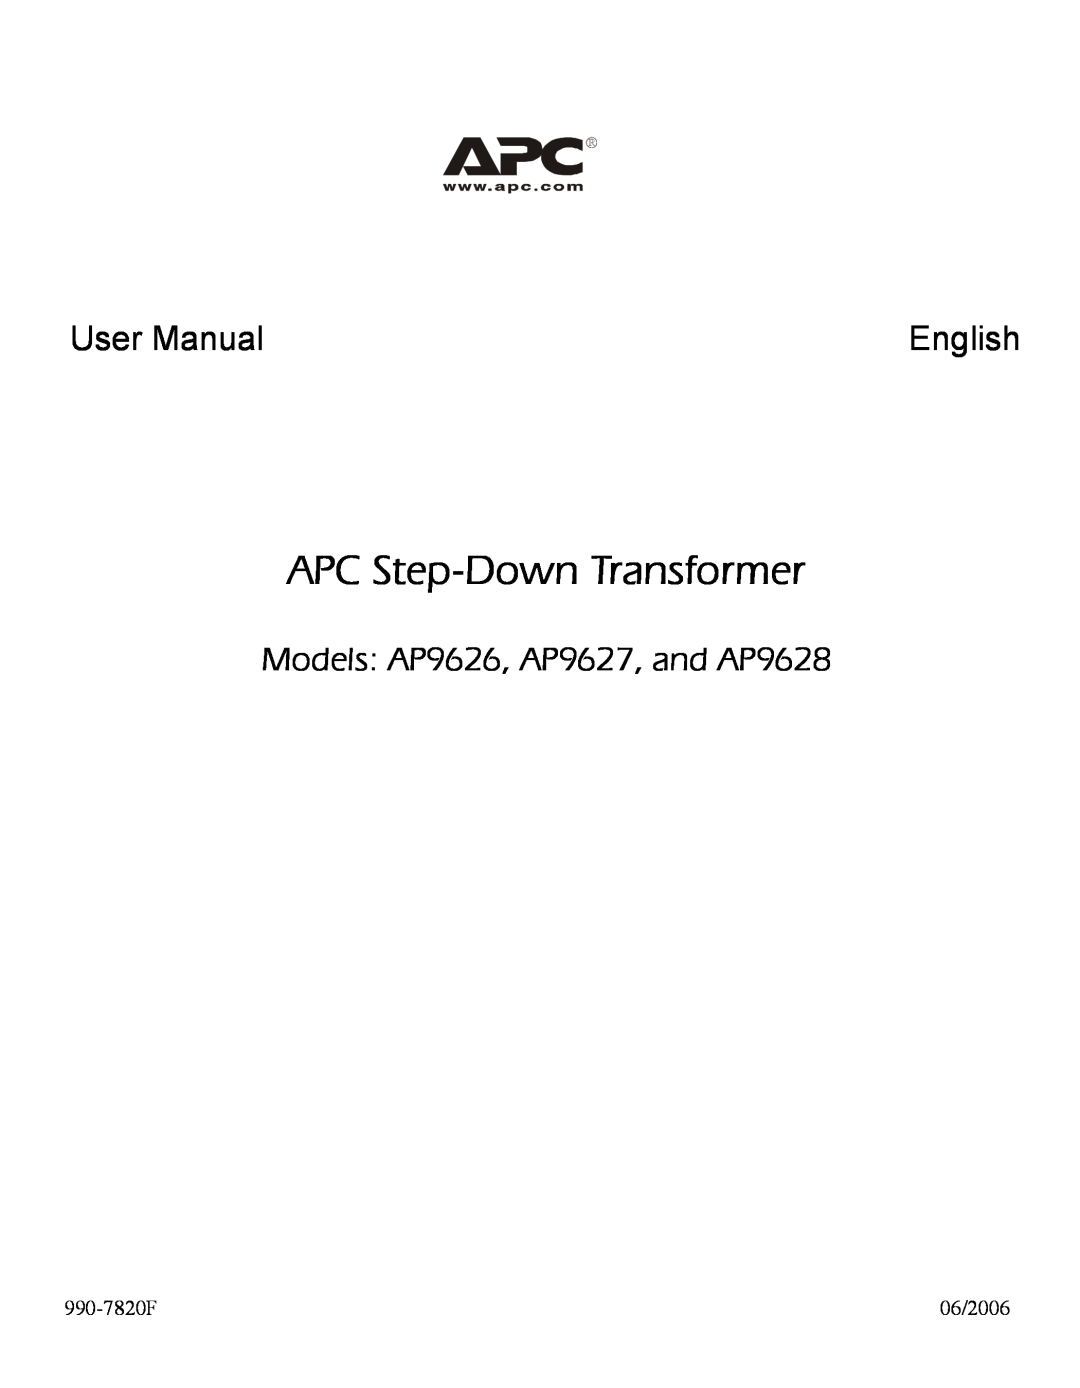 APC user manual APC Step-Down Transformer, English, Models AP9626, AP9627, and AP9628 